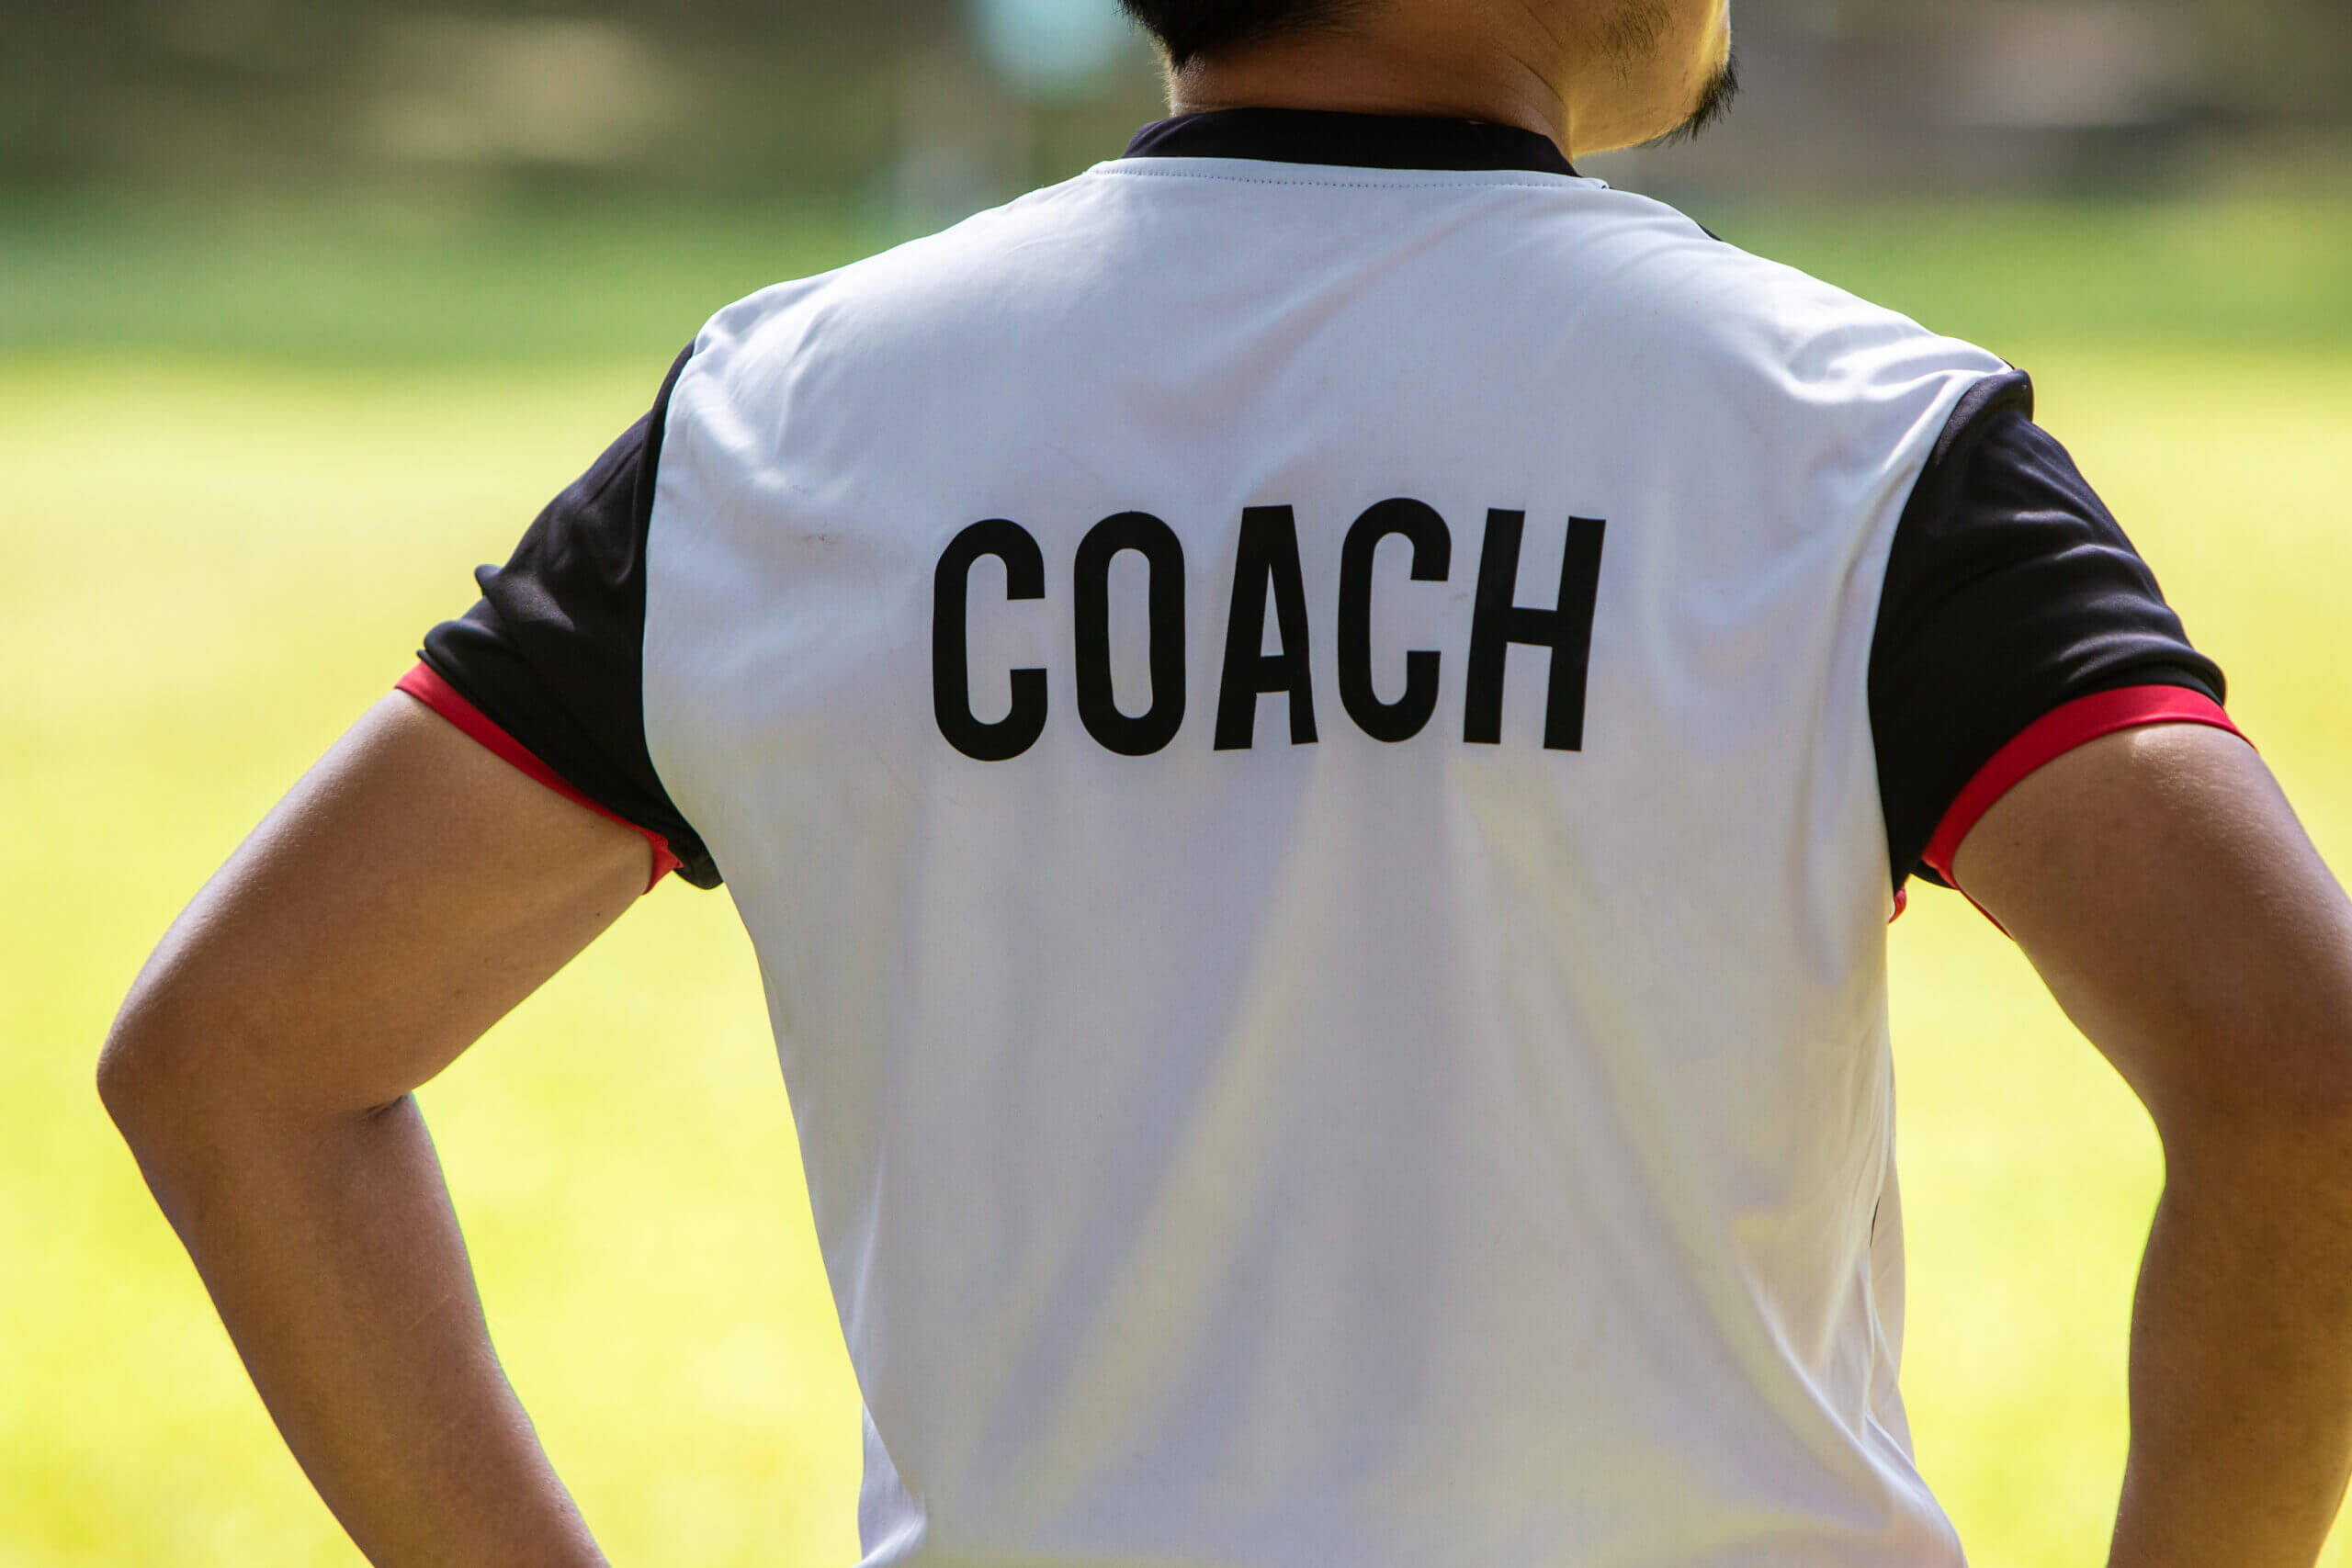 Team coach